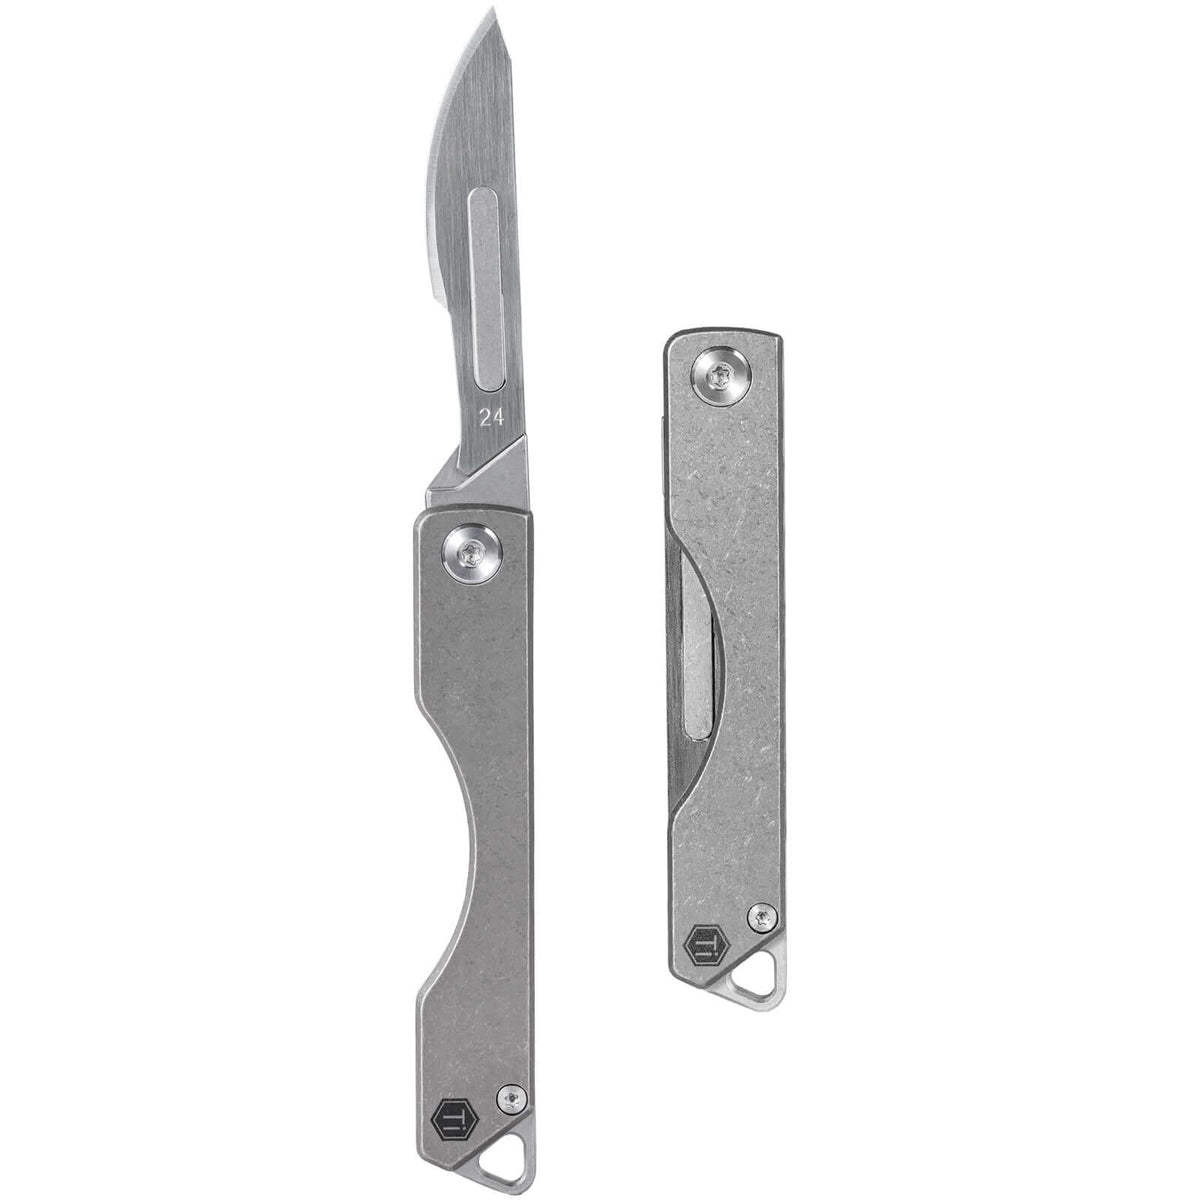 KK01 Titanium Pocket Knife & #24 Carbon Steel Scalpel Blades 10pcs Bundle